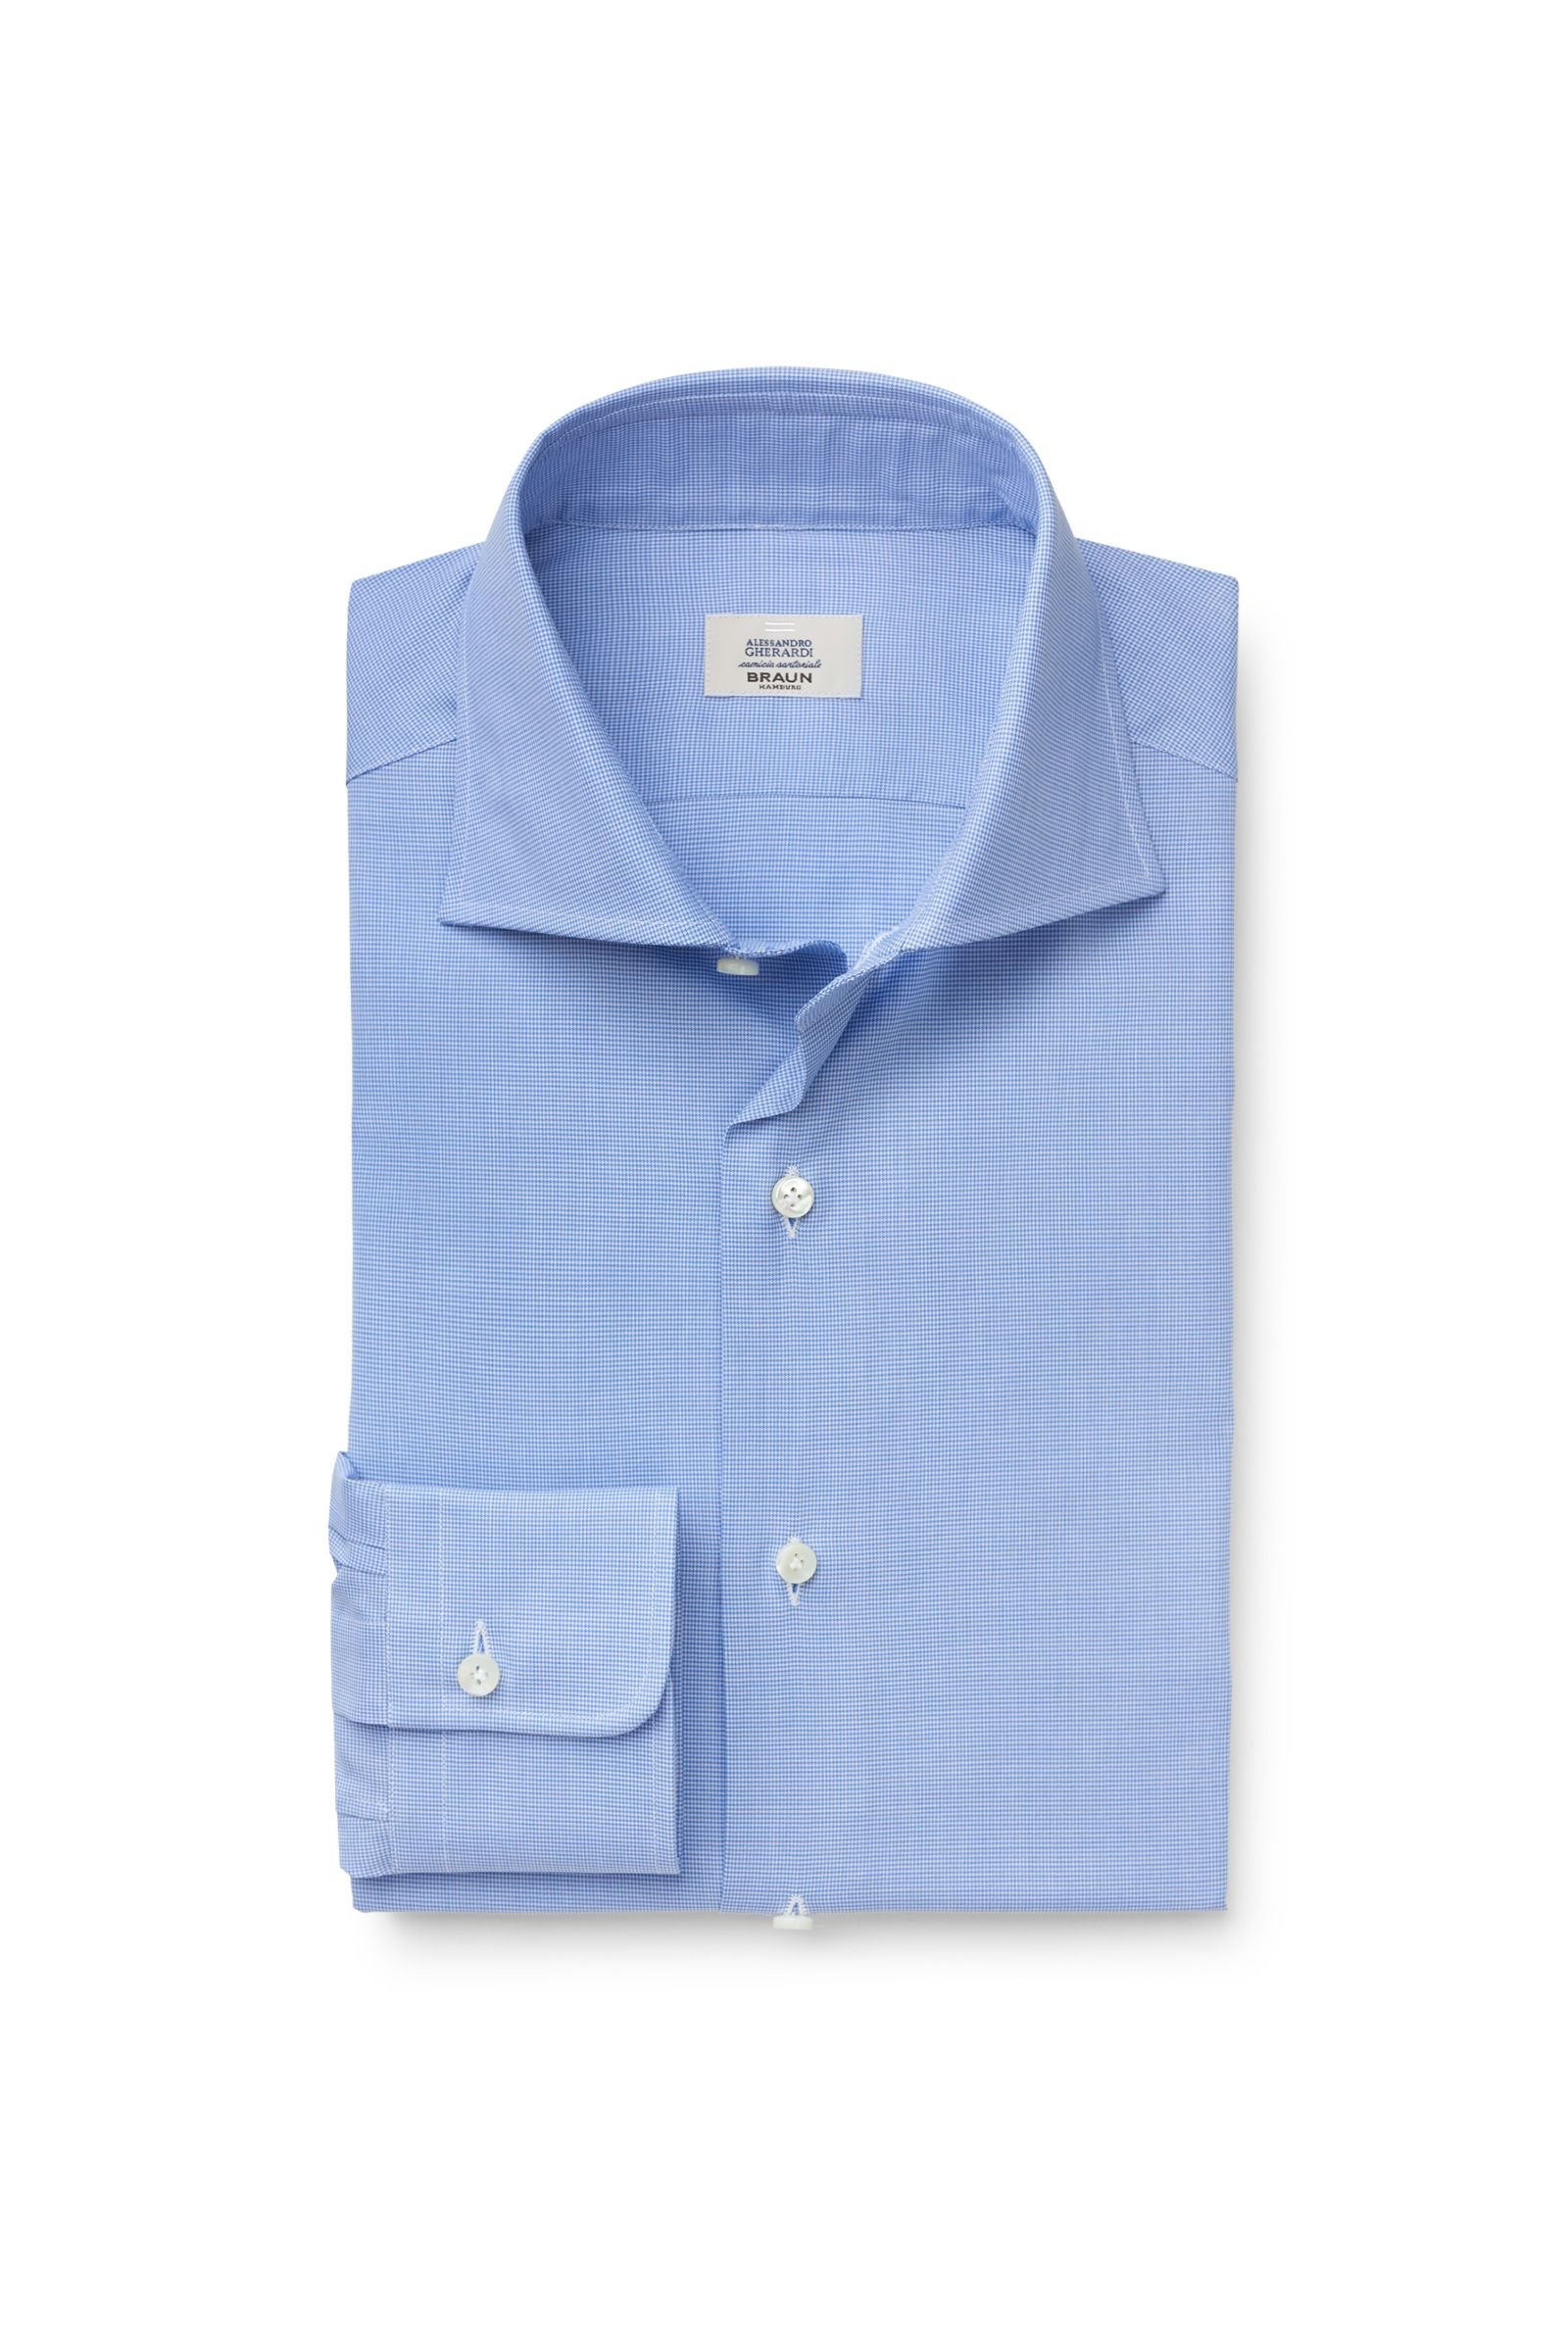 Business shirt shark collar blue patterned